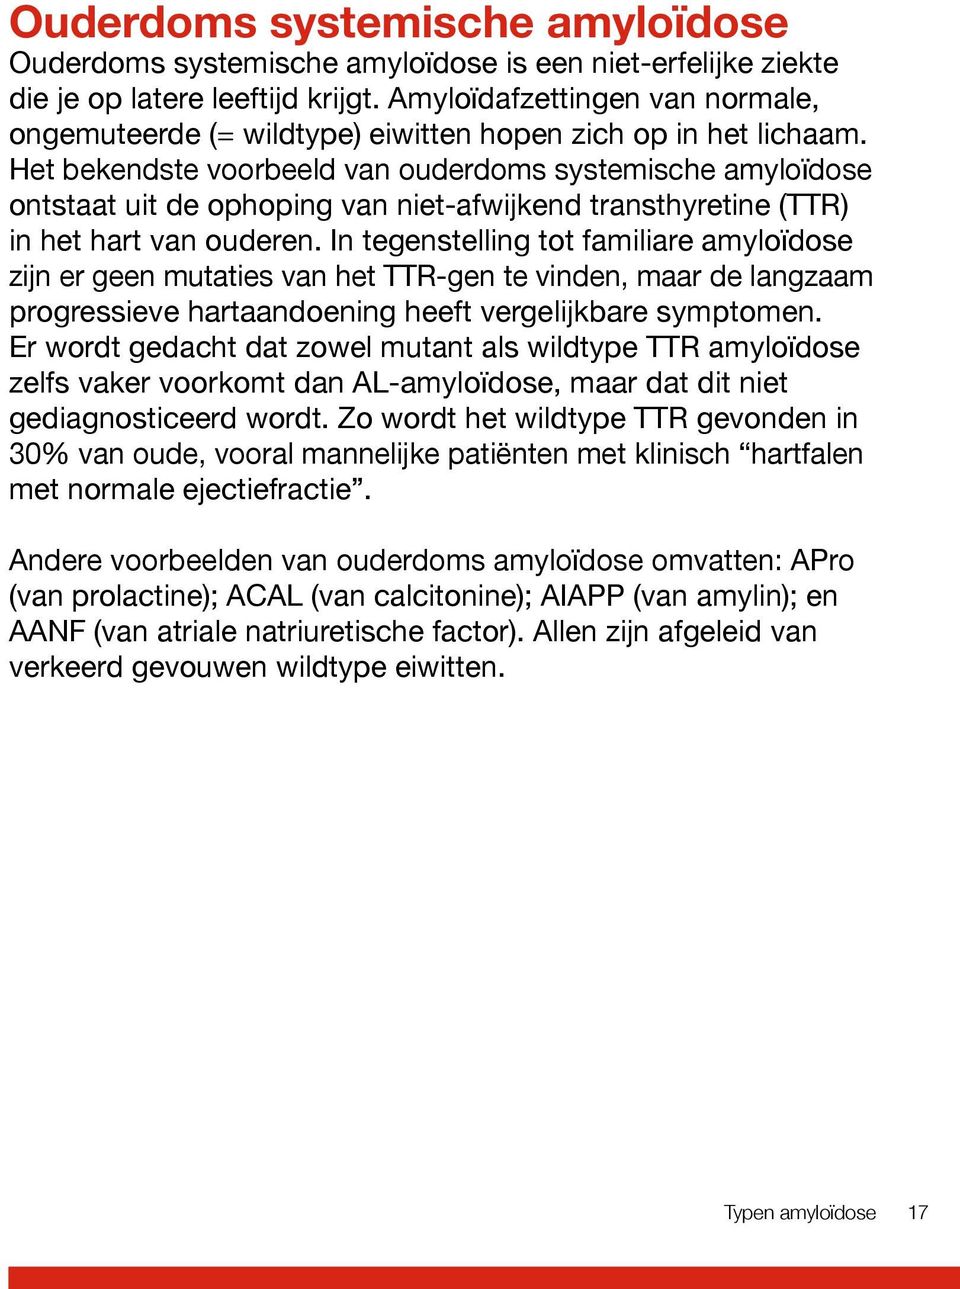 Het bekendste voorbeeld van ouderdoms systemische amyloïdose ontstaat uit de ophoping van niet-afwijkend transthyretine (TTR) in het hart van ouderen.